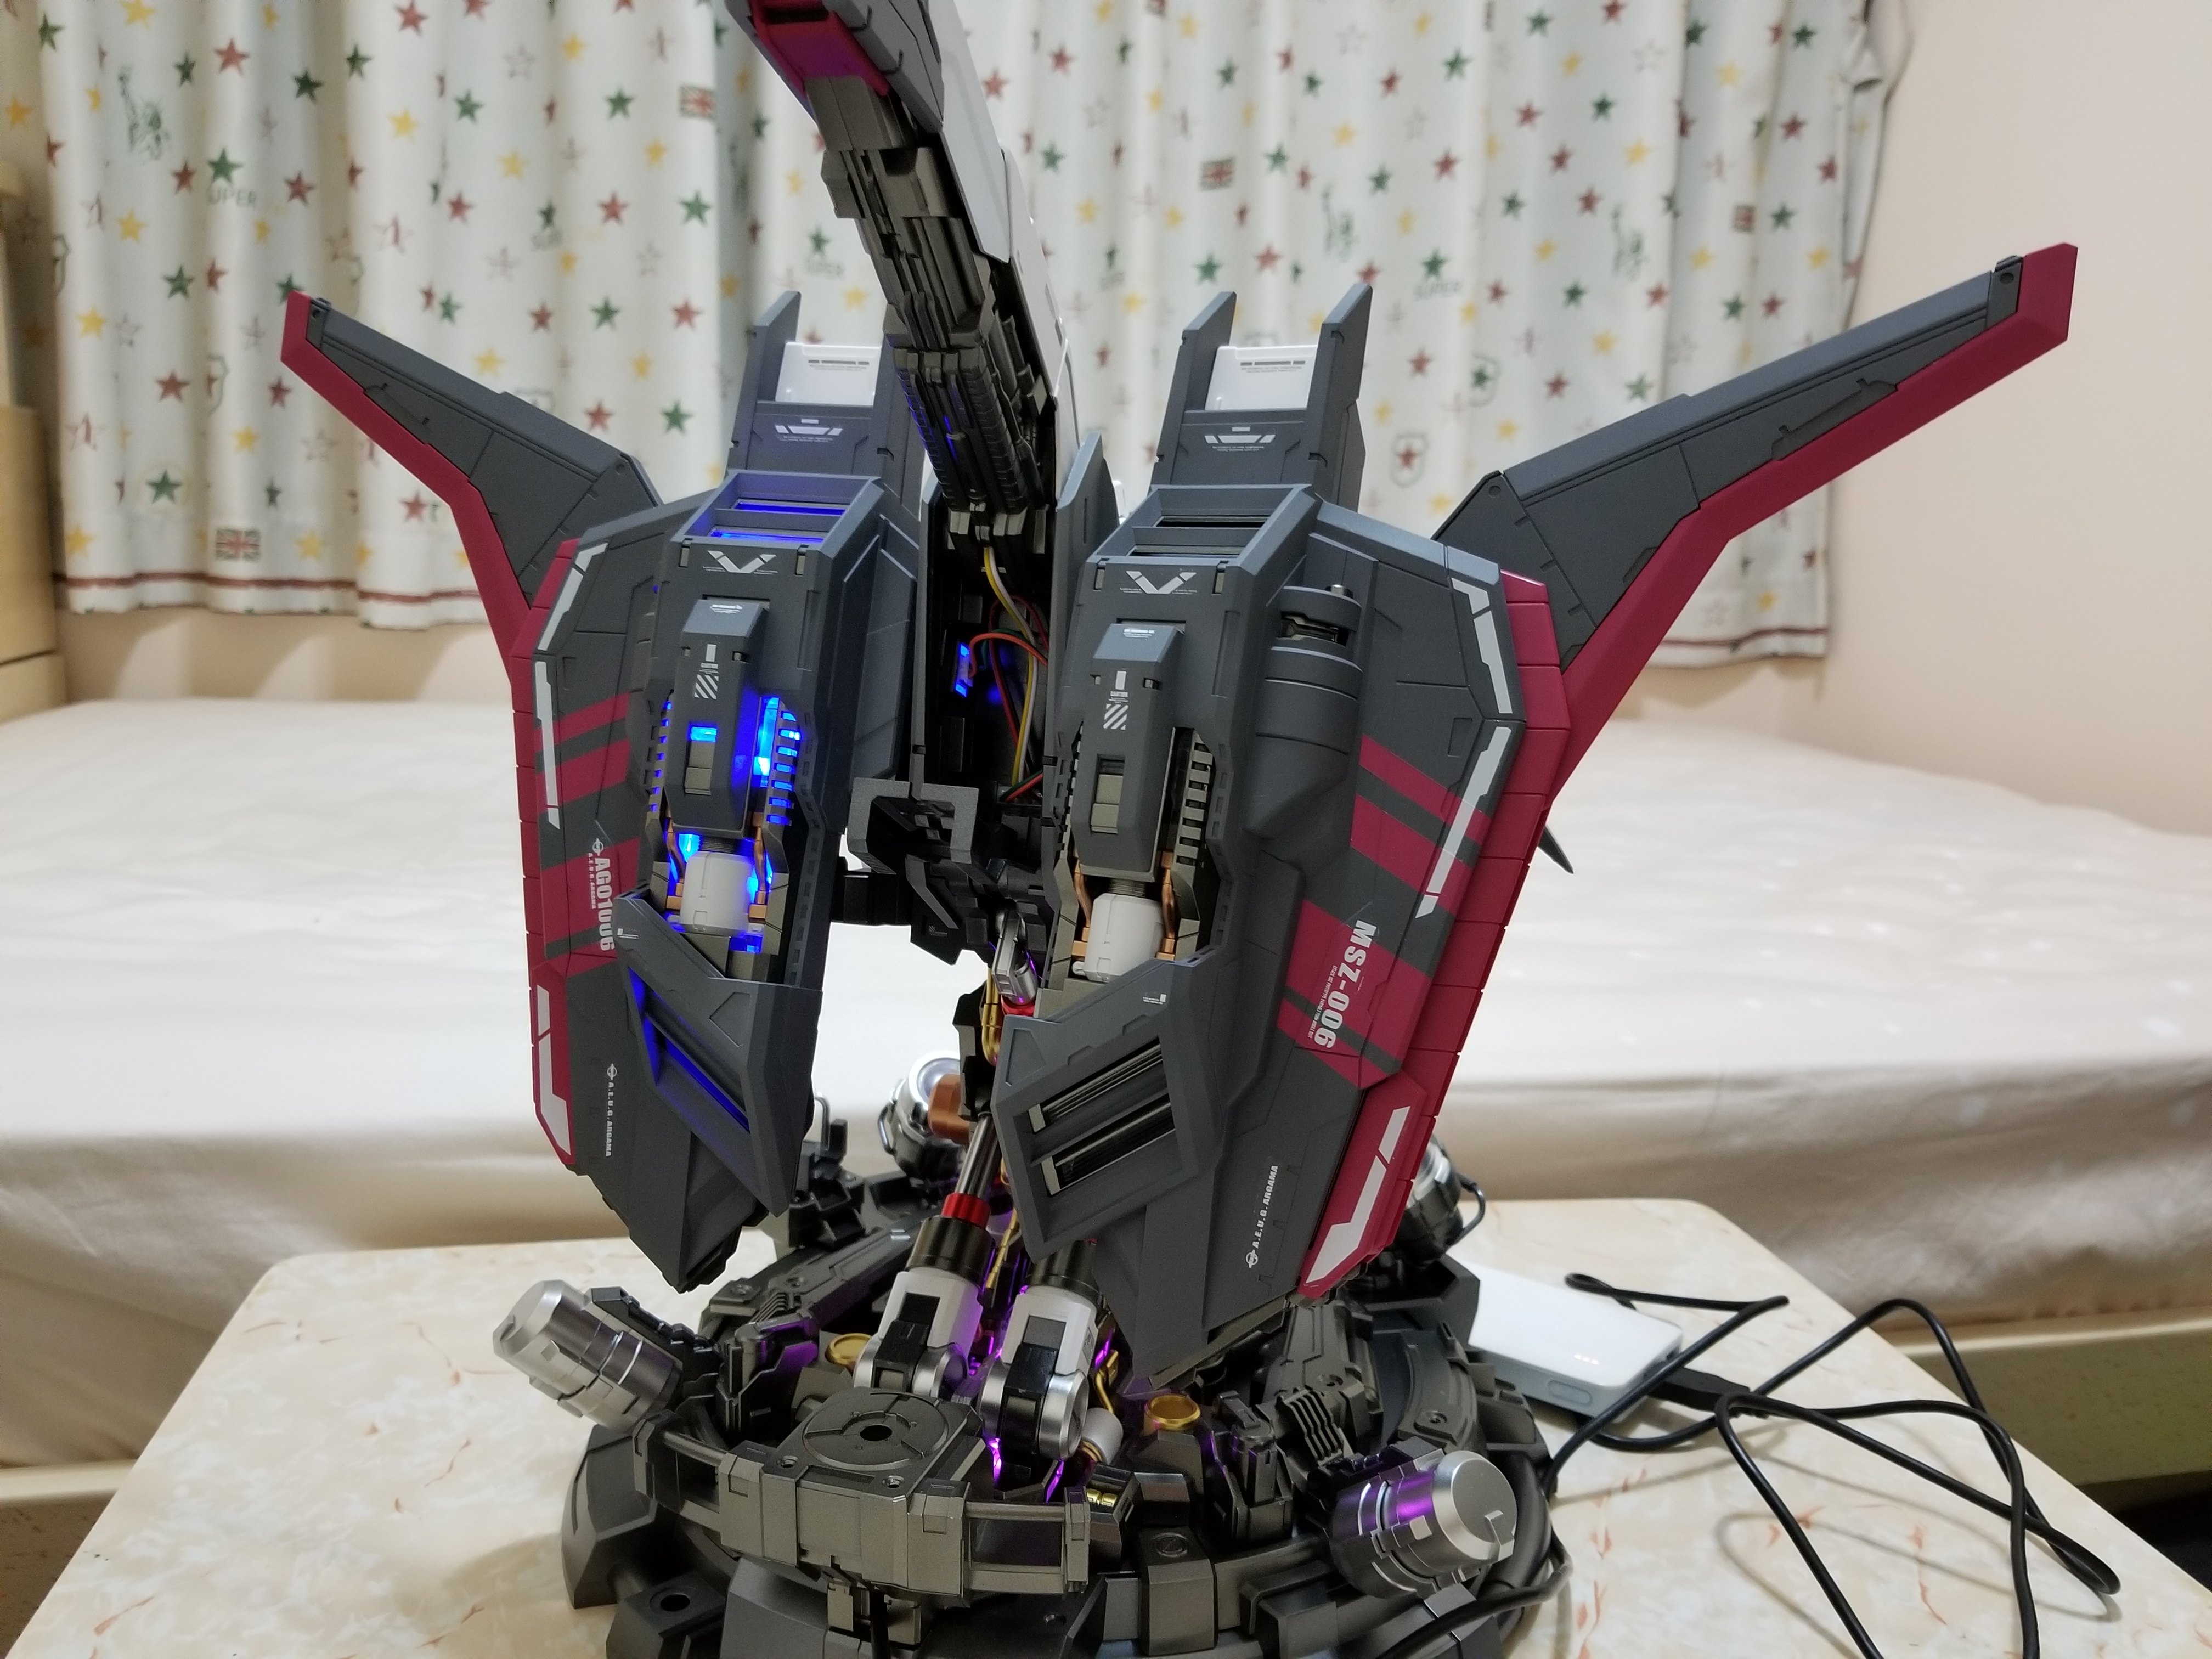 億輝1/35 Zeta Gundam胸像3號機配色- 科幻模型成品發佈區- 香港模型聯盟